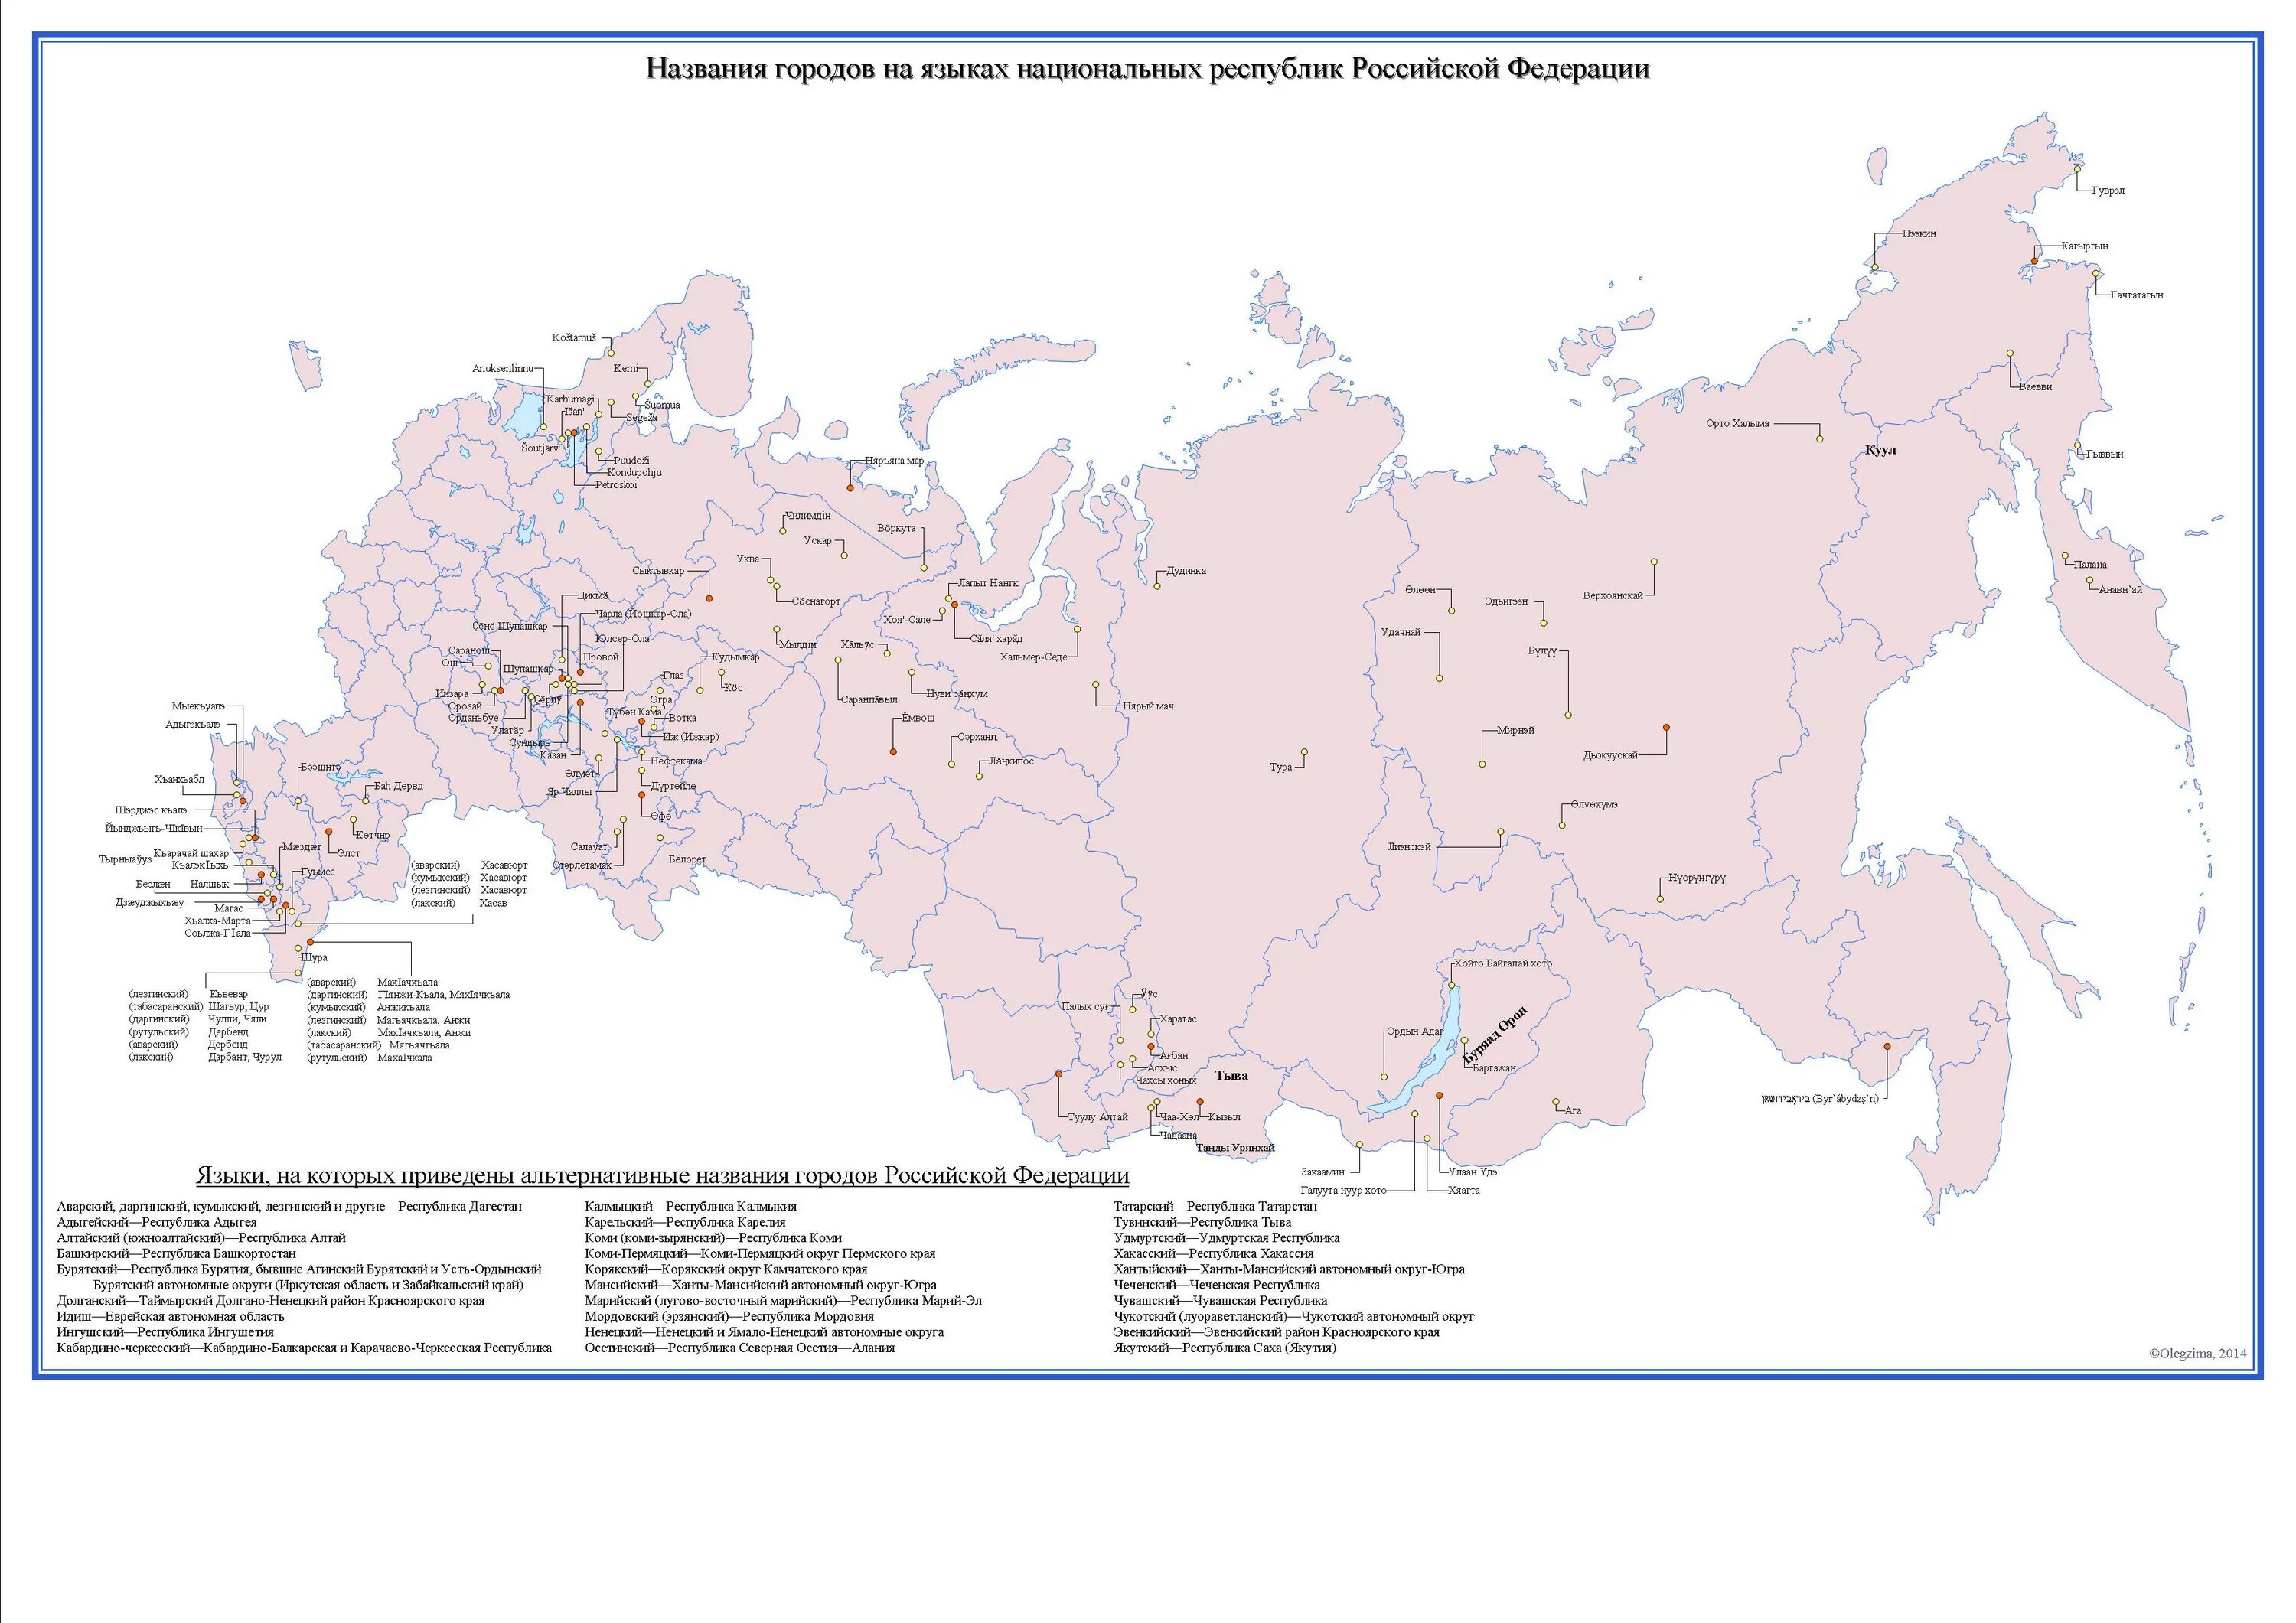 Республики России. Республики Российской Федерации на карте. Карта республик. Республики РФ на карте.